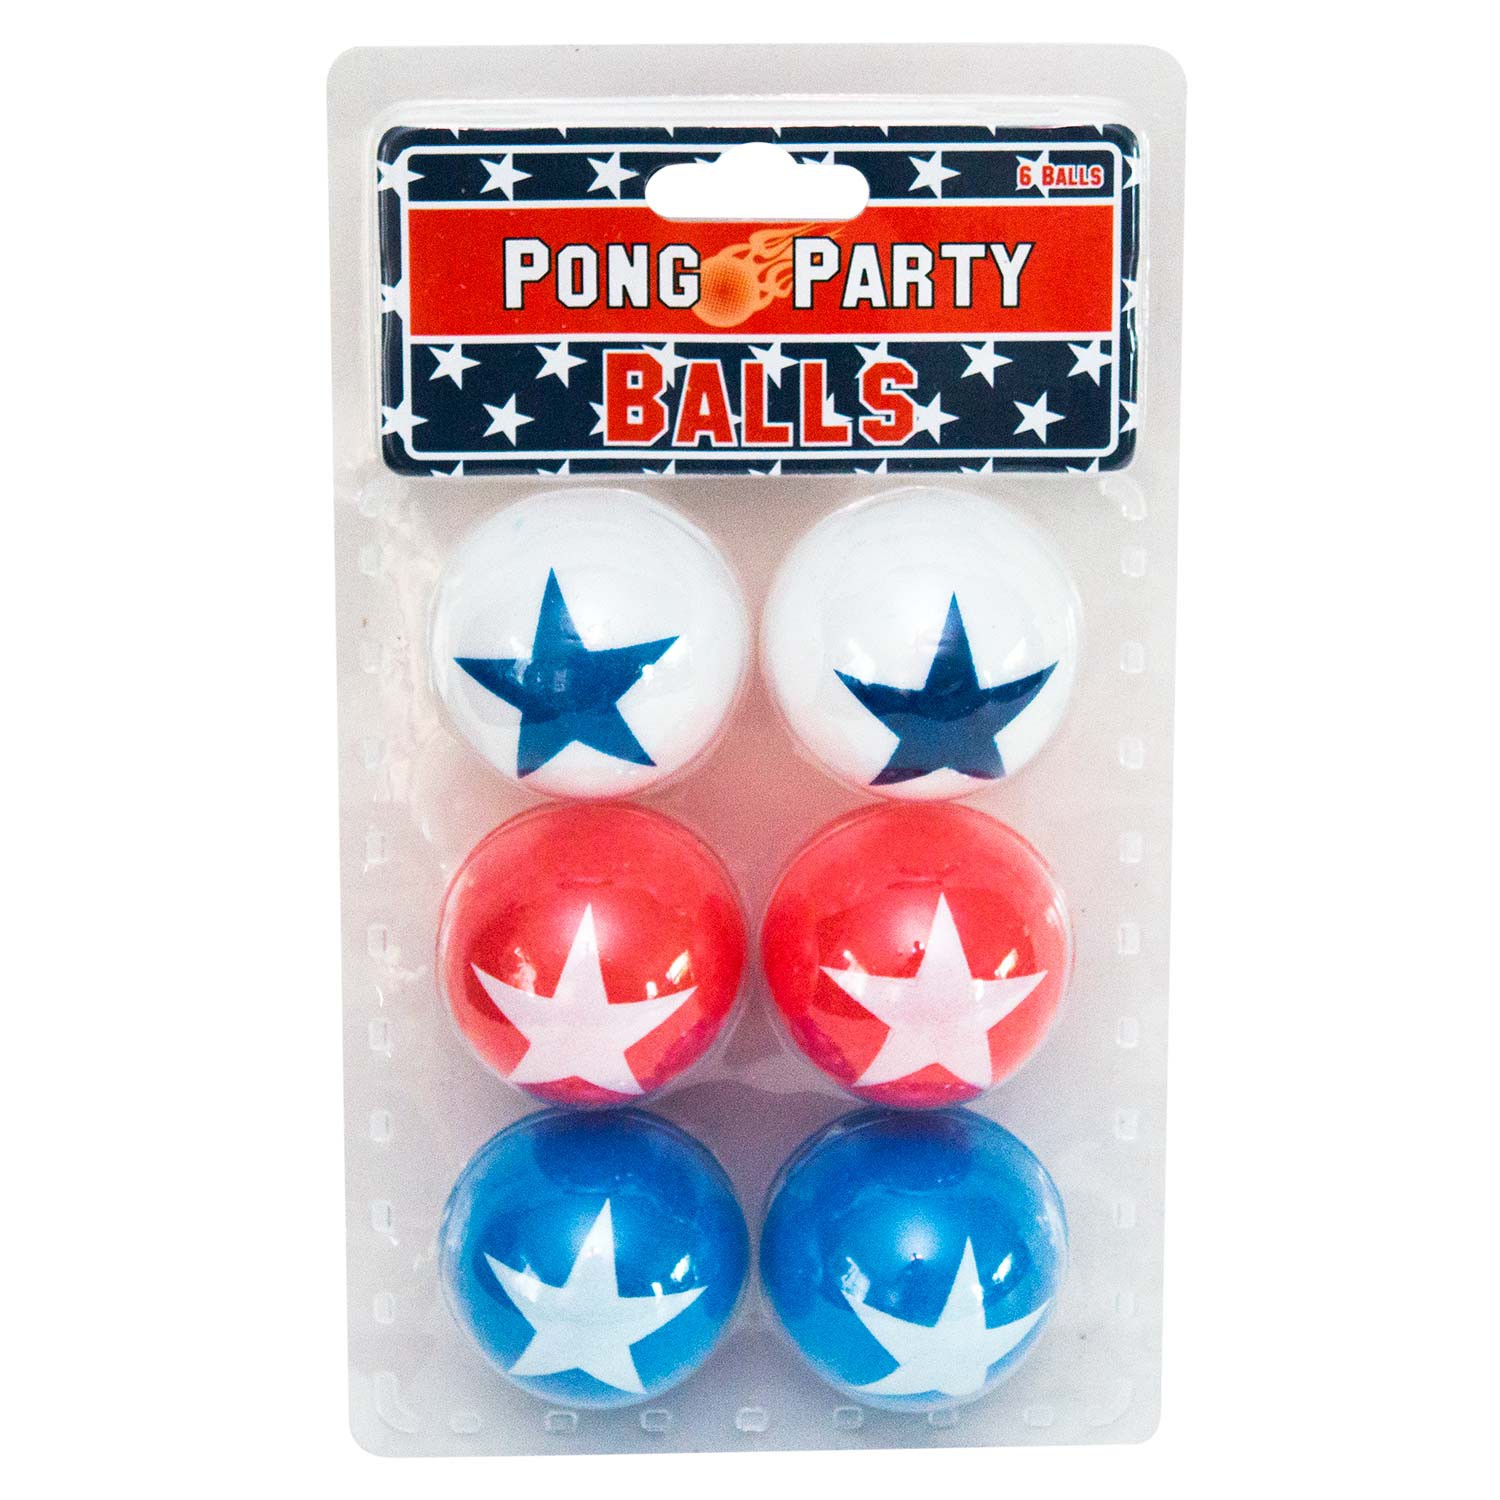 Party balls. Шарики для пинг понга деловая игра. Balls Party. USA balls.